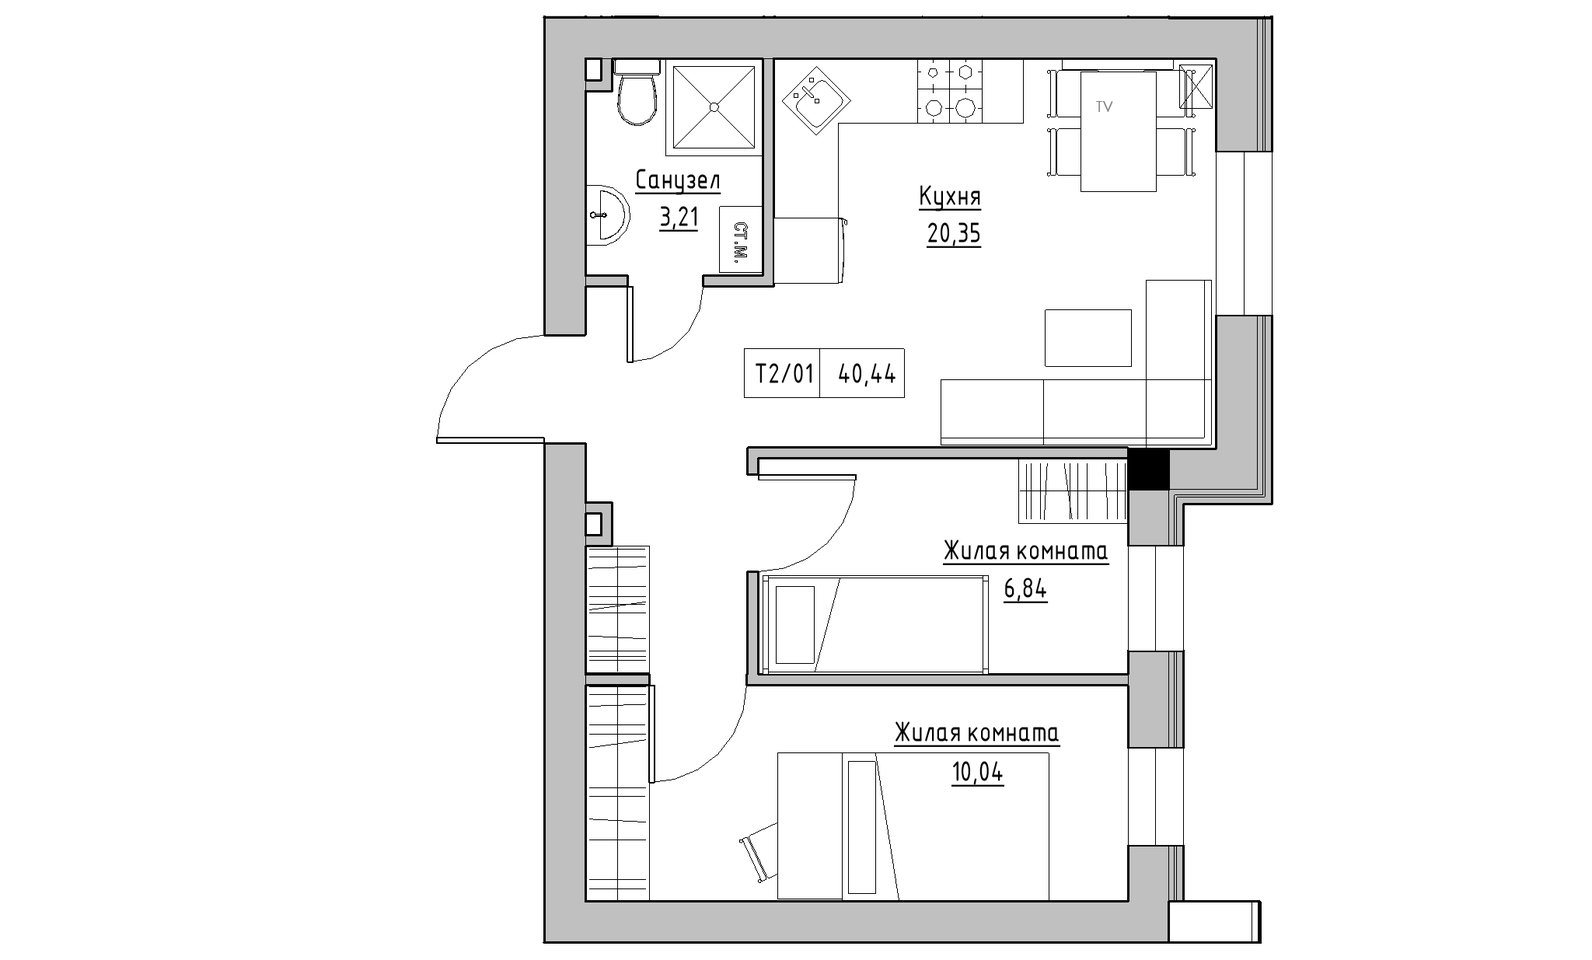 Планування 2-к квартира площею 40.44м2, KS-014-01/0010.